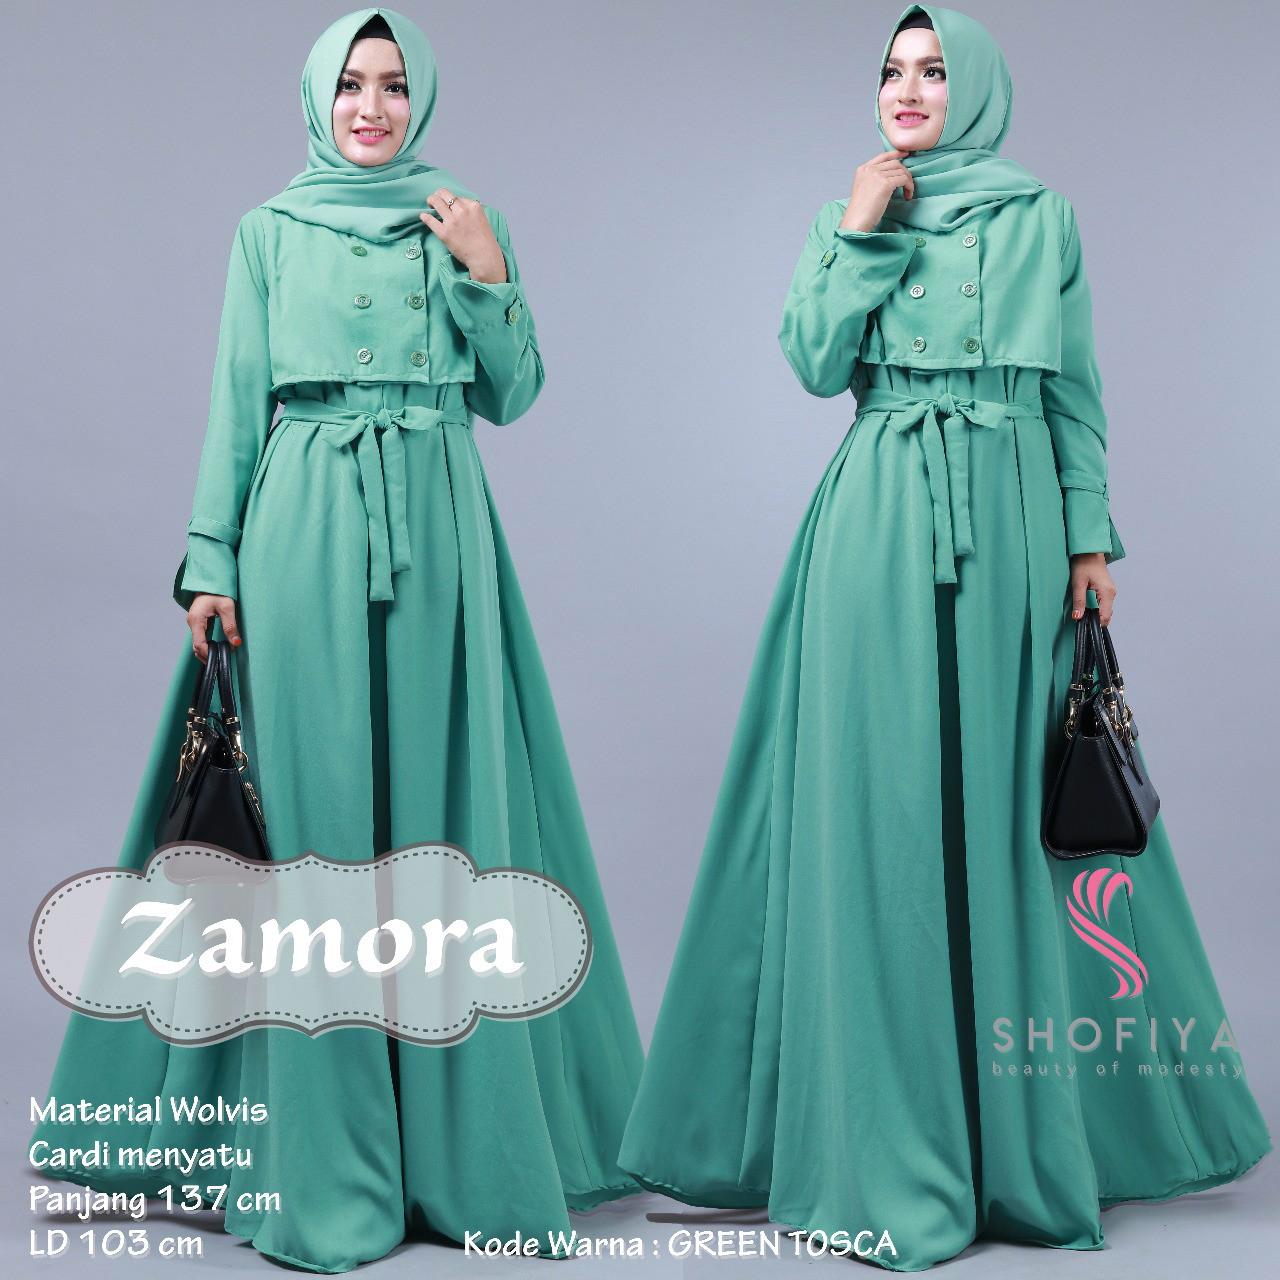  Model  Baju  Gamis Batik  Warna  Hijau  Tosca  Ragam Muslim